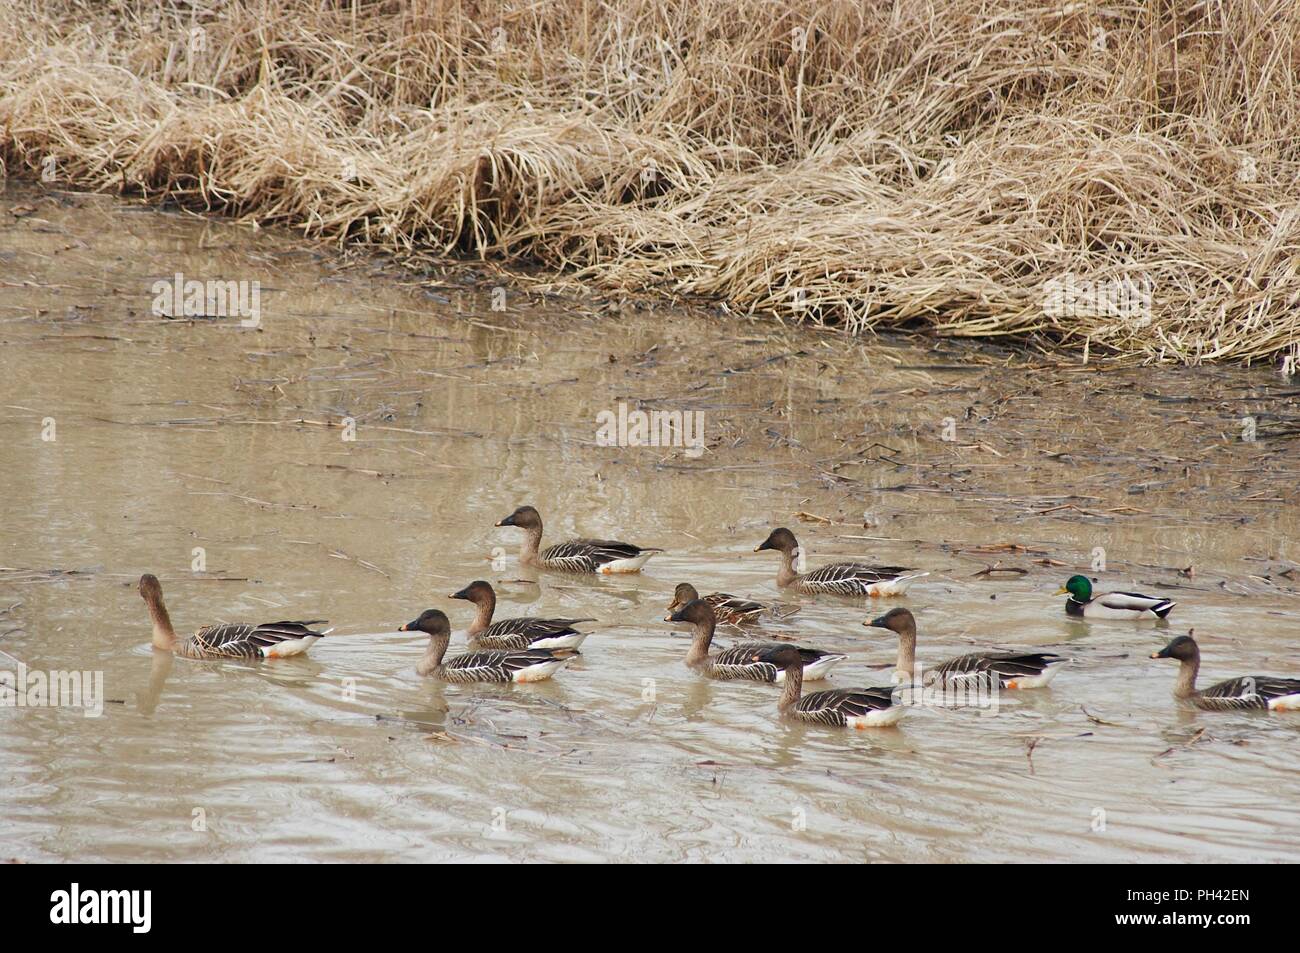 La natation en groupe d'oiseaux migrateurs dans le réservoir Junam, Corée Banque D'Images